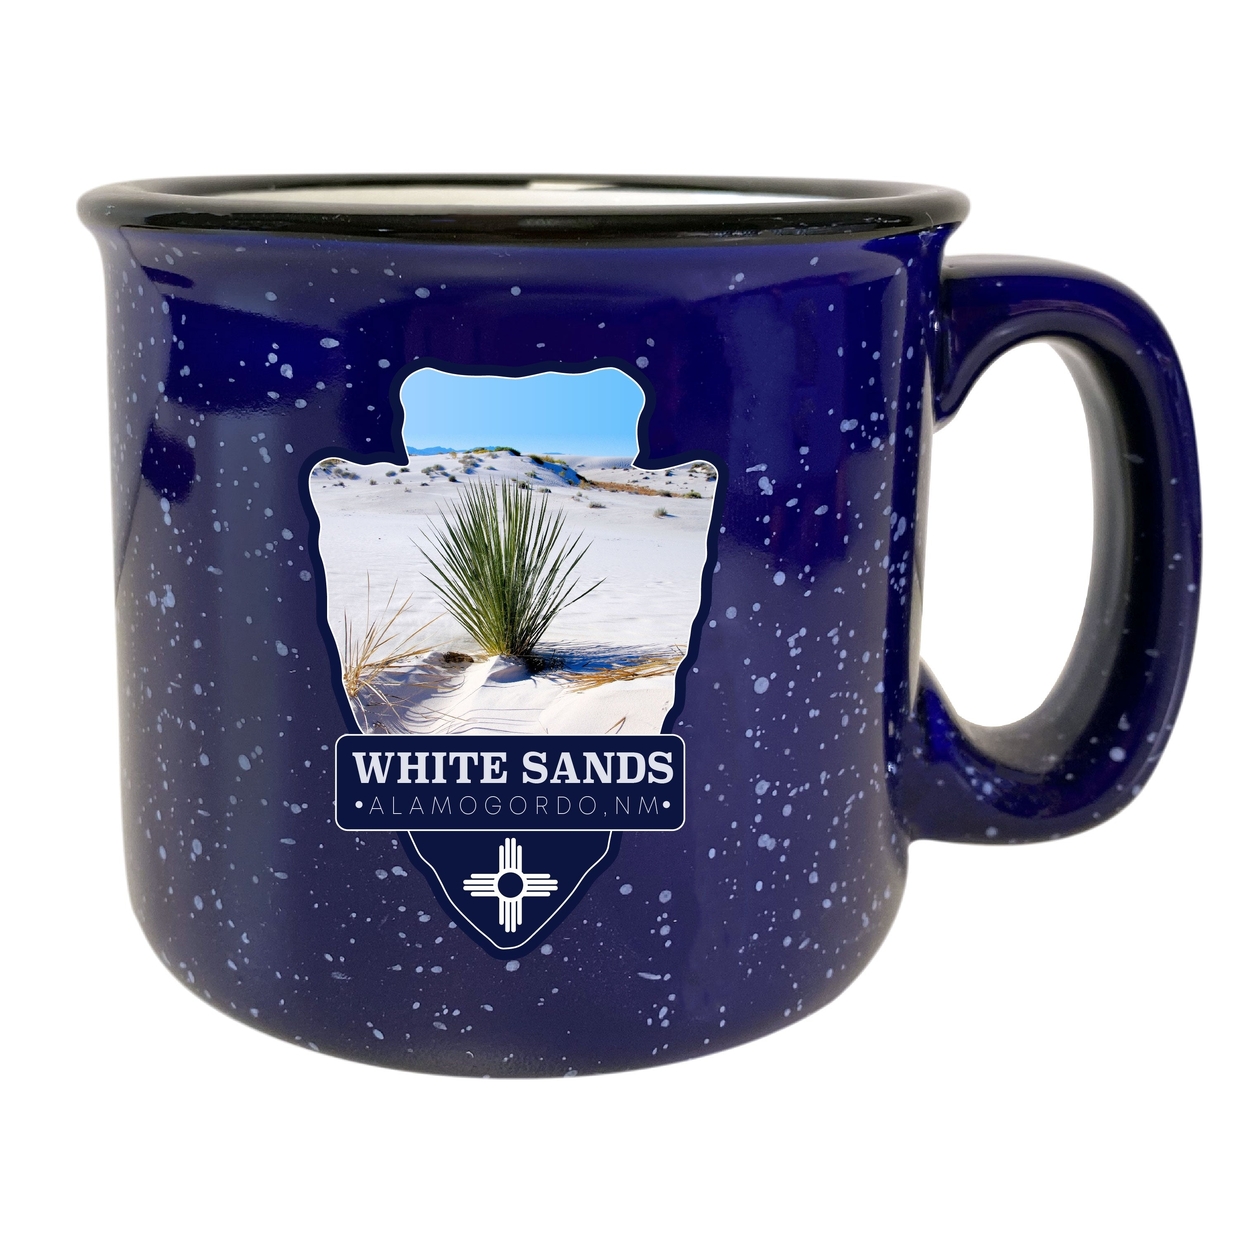 White Sands Alamogordo New Mexico 16 Oz Navy Speckled Ceramic Camper Coffee Mug Choice Of Design - Design B